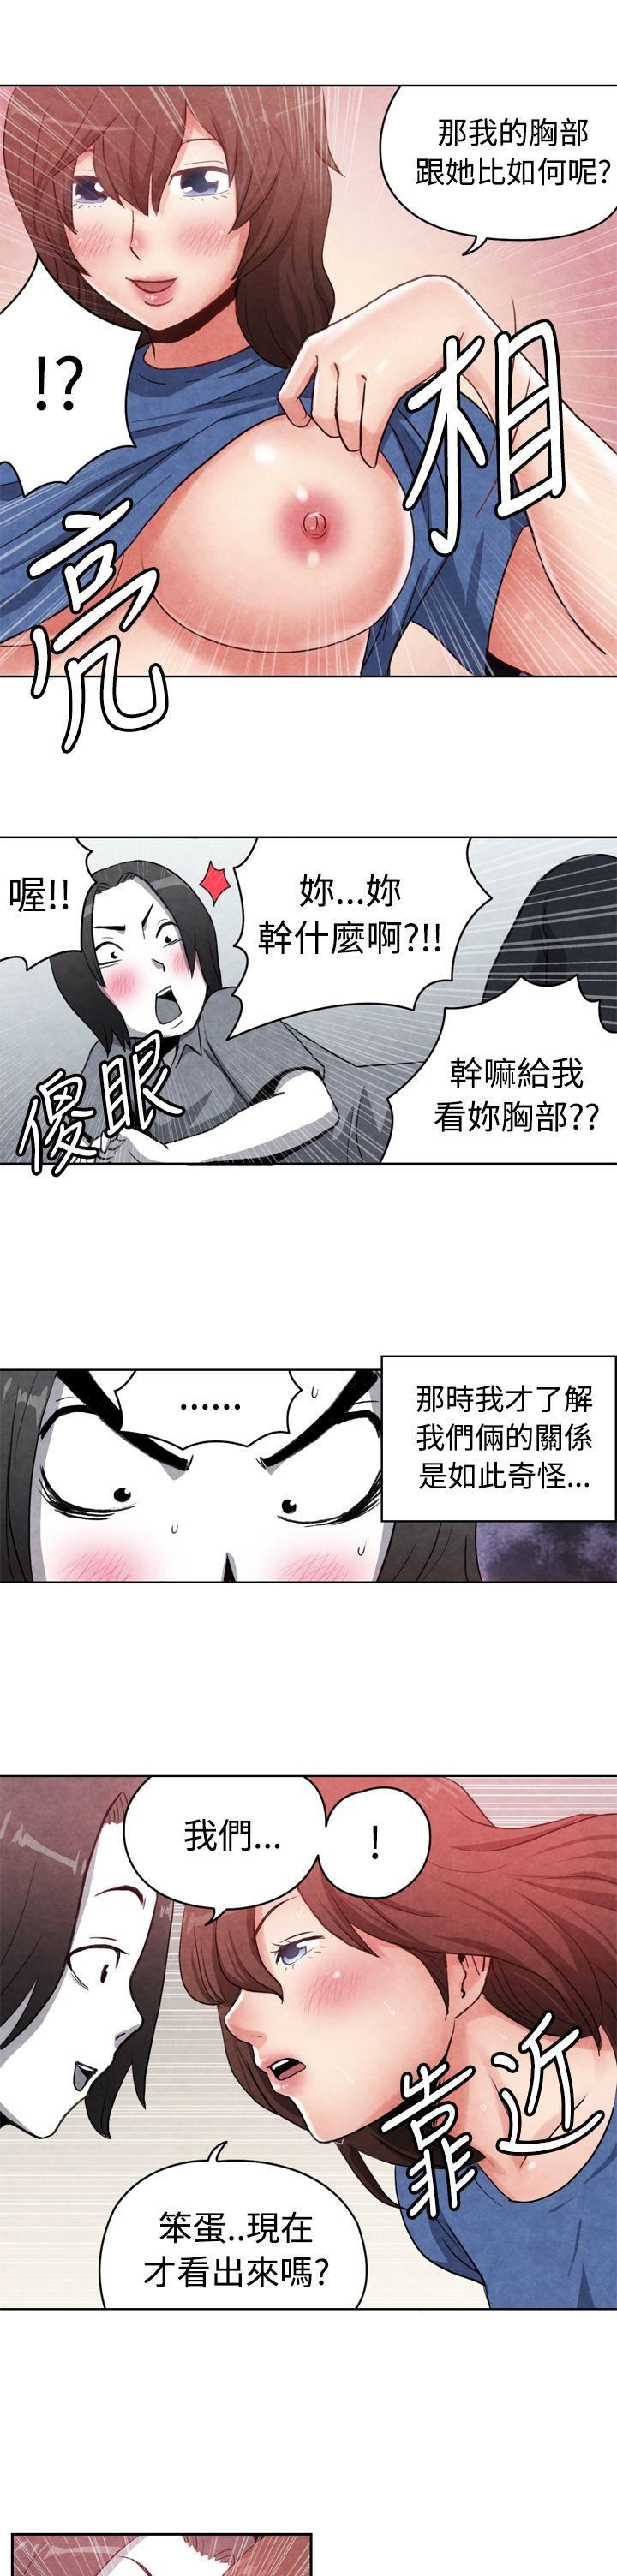 韩国污漫画 生物學的女性攻略法 CASE16-2.擦屁股之神 4